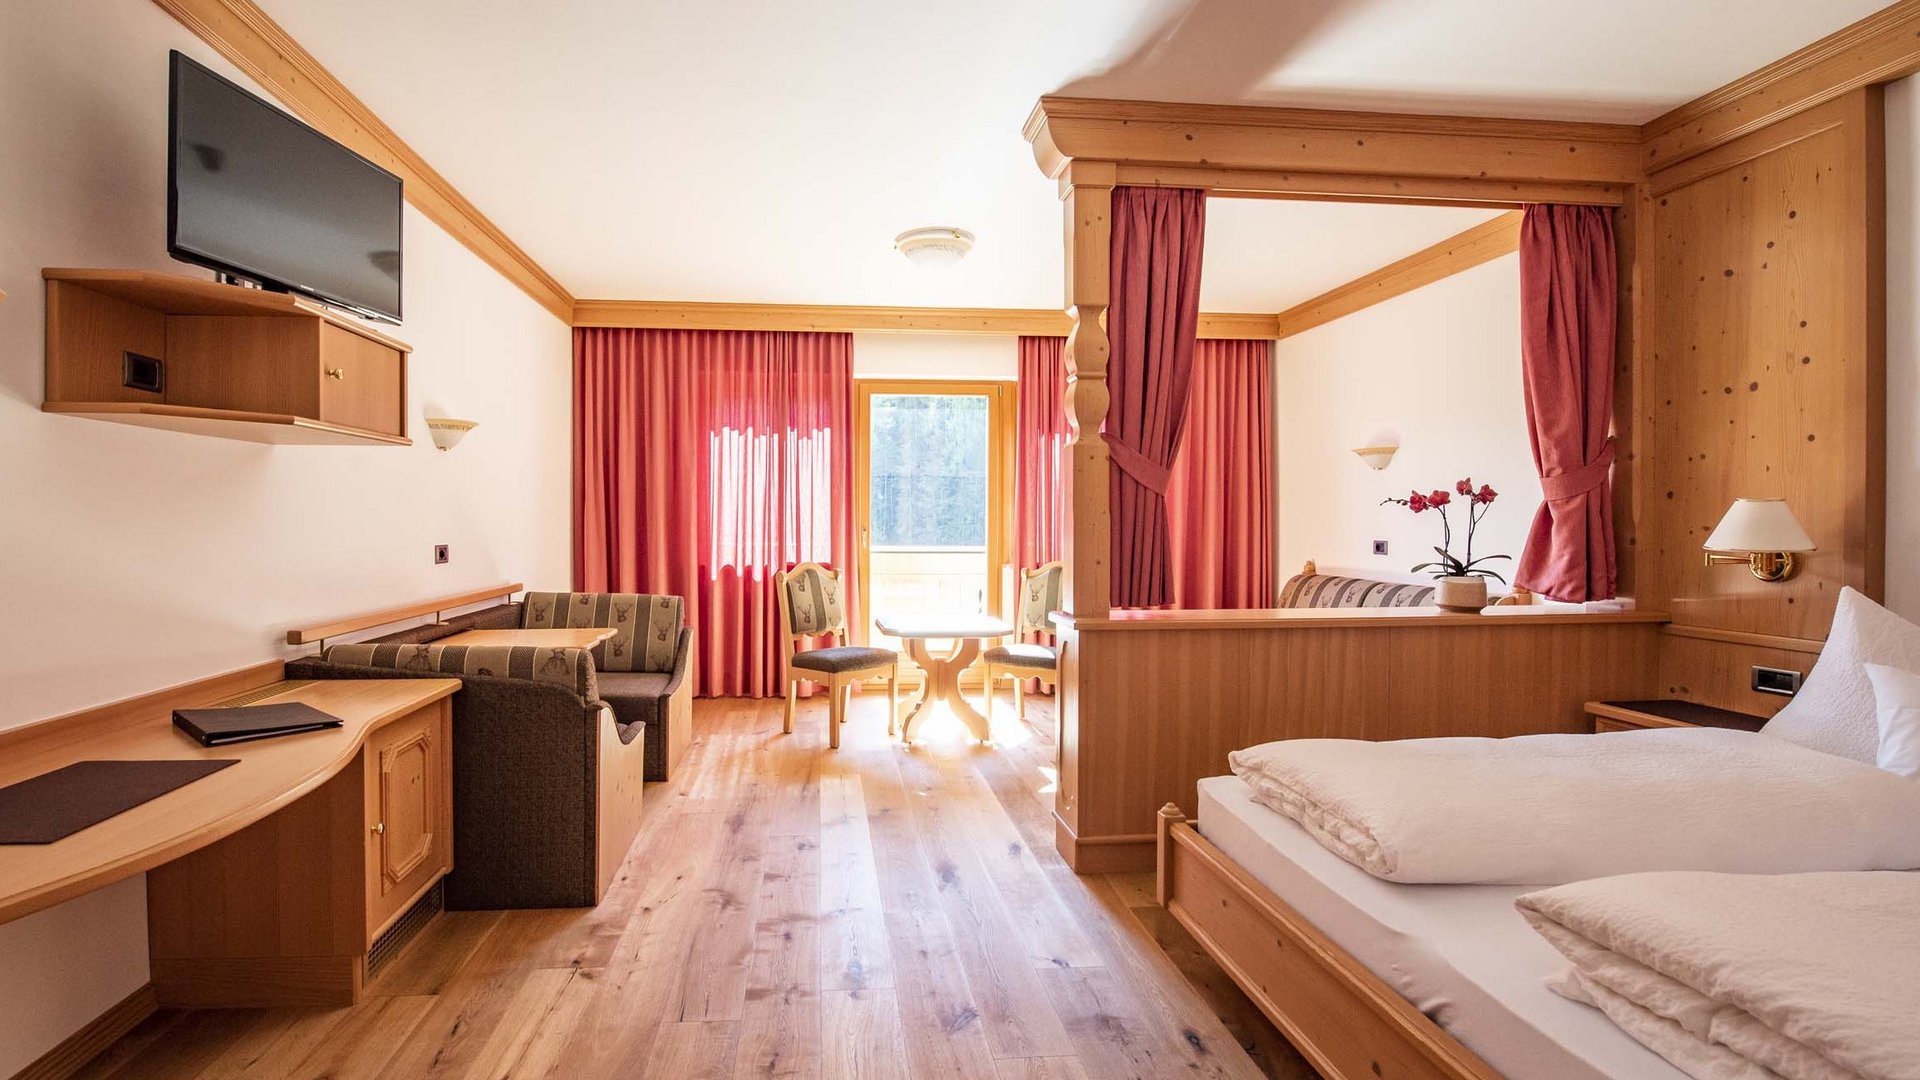 Informazioni sui prezzi del nostro hotel benessere nelle Dolomiti